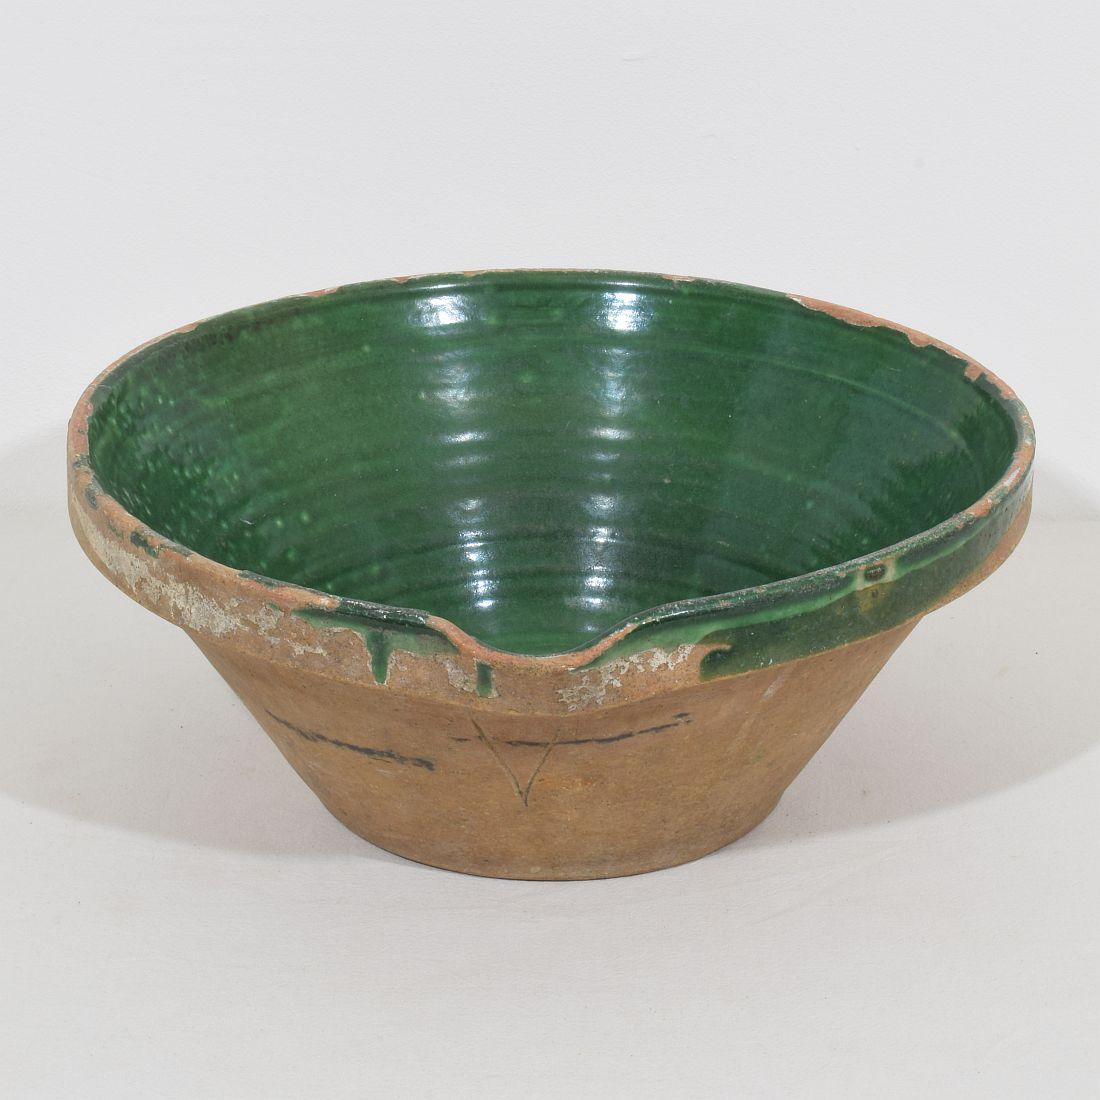 Tolles Stück Keramik aus der Provence. Schöne grüne Farbe,
Frankreich, um 1850.
Guter, aber verwitterter Zustand.